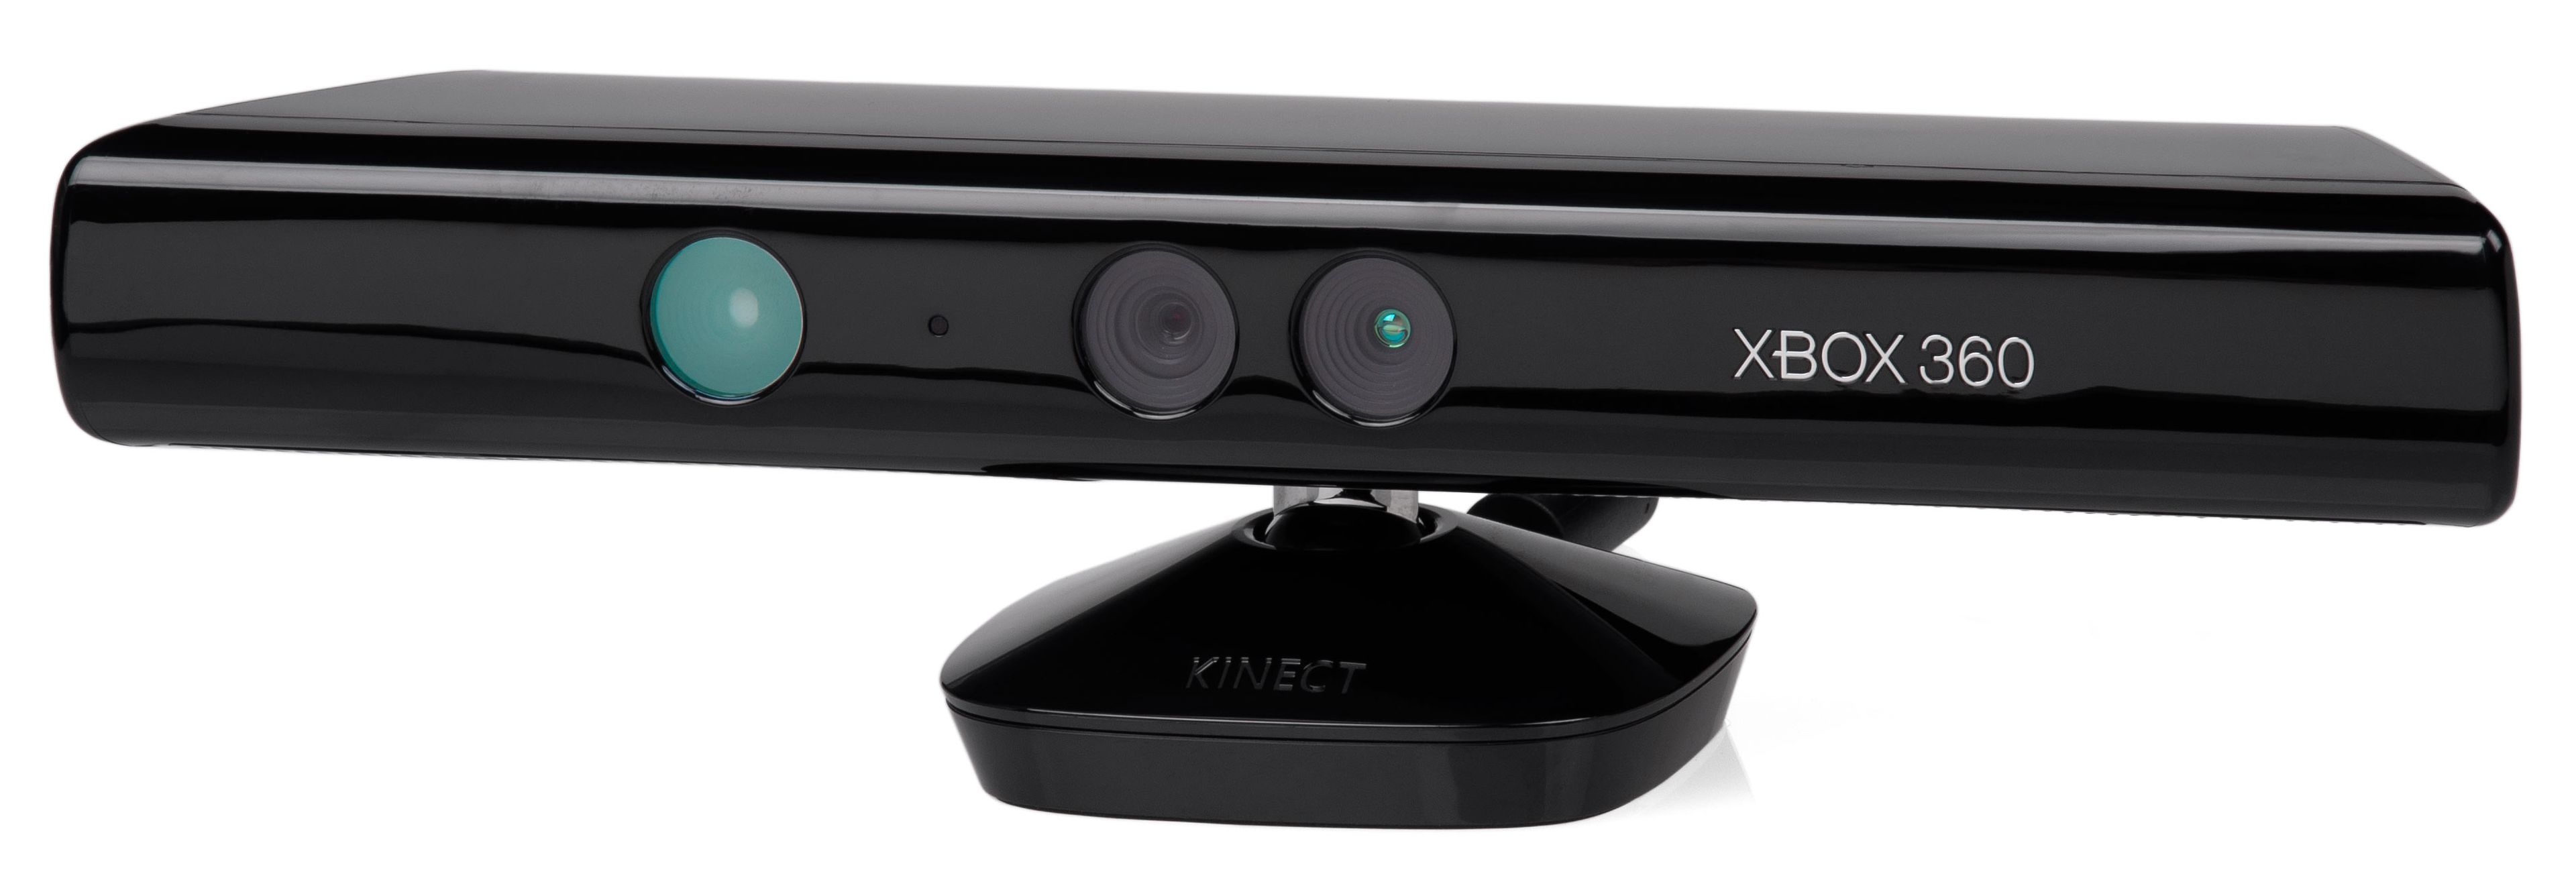 Kinect en Hobby Consolas